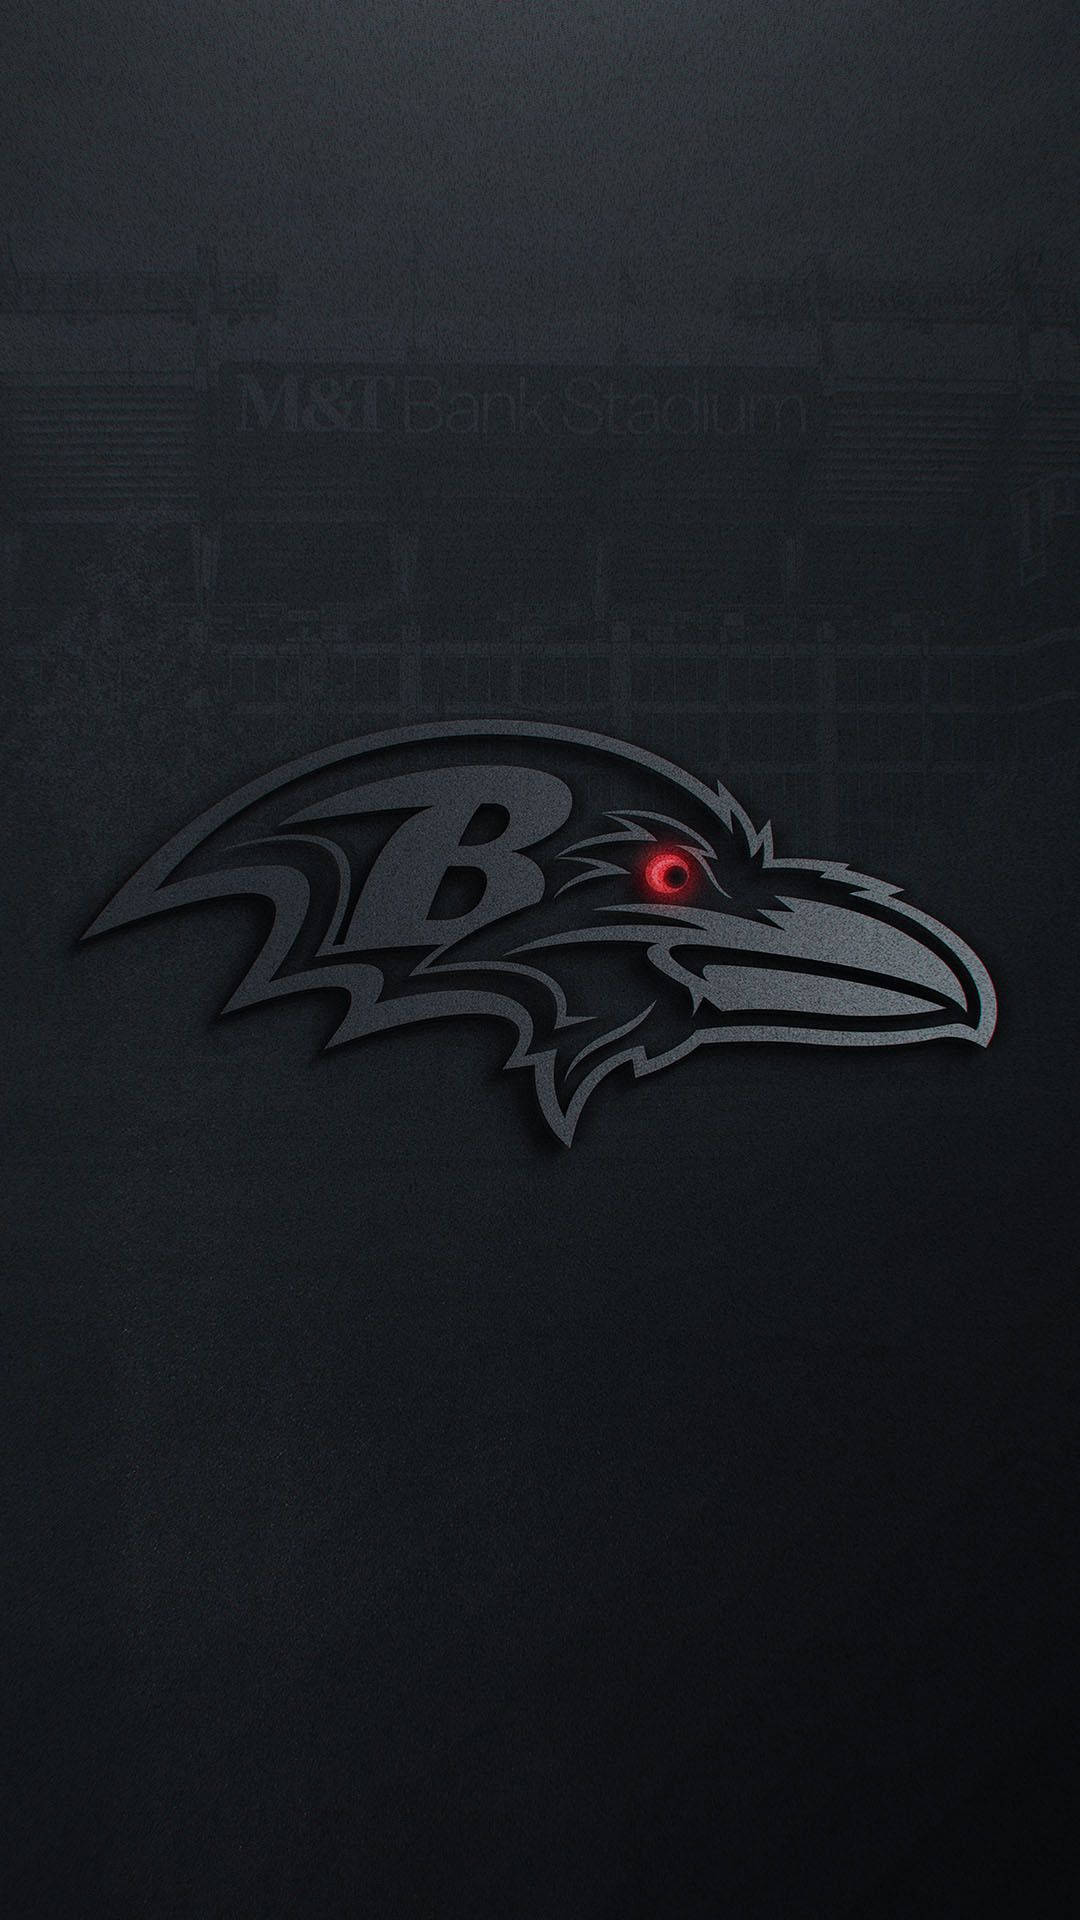 Zeigensie Ihre Begeisterung Für Die Baltimore Ravens Mit Diesem Individuellen Iphone! Wallpaper